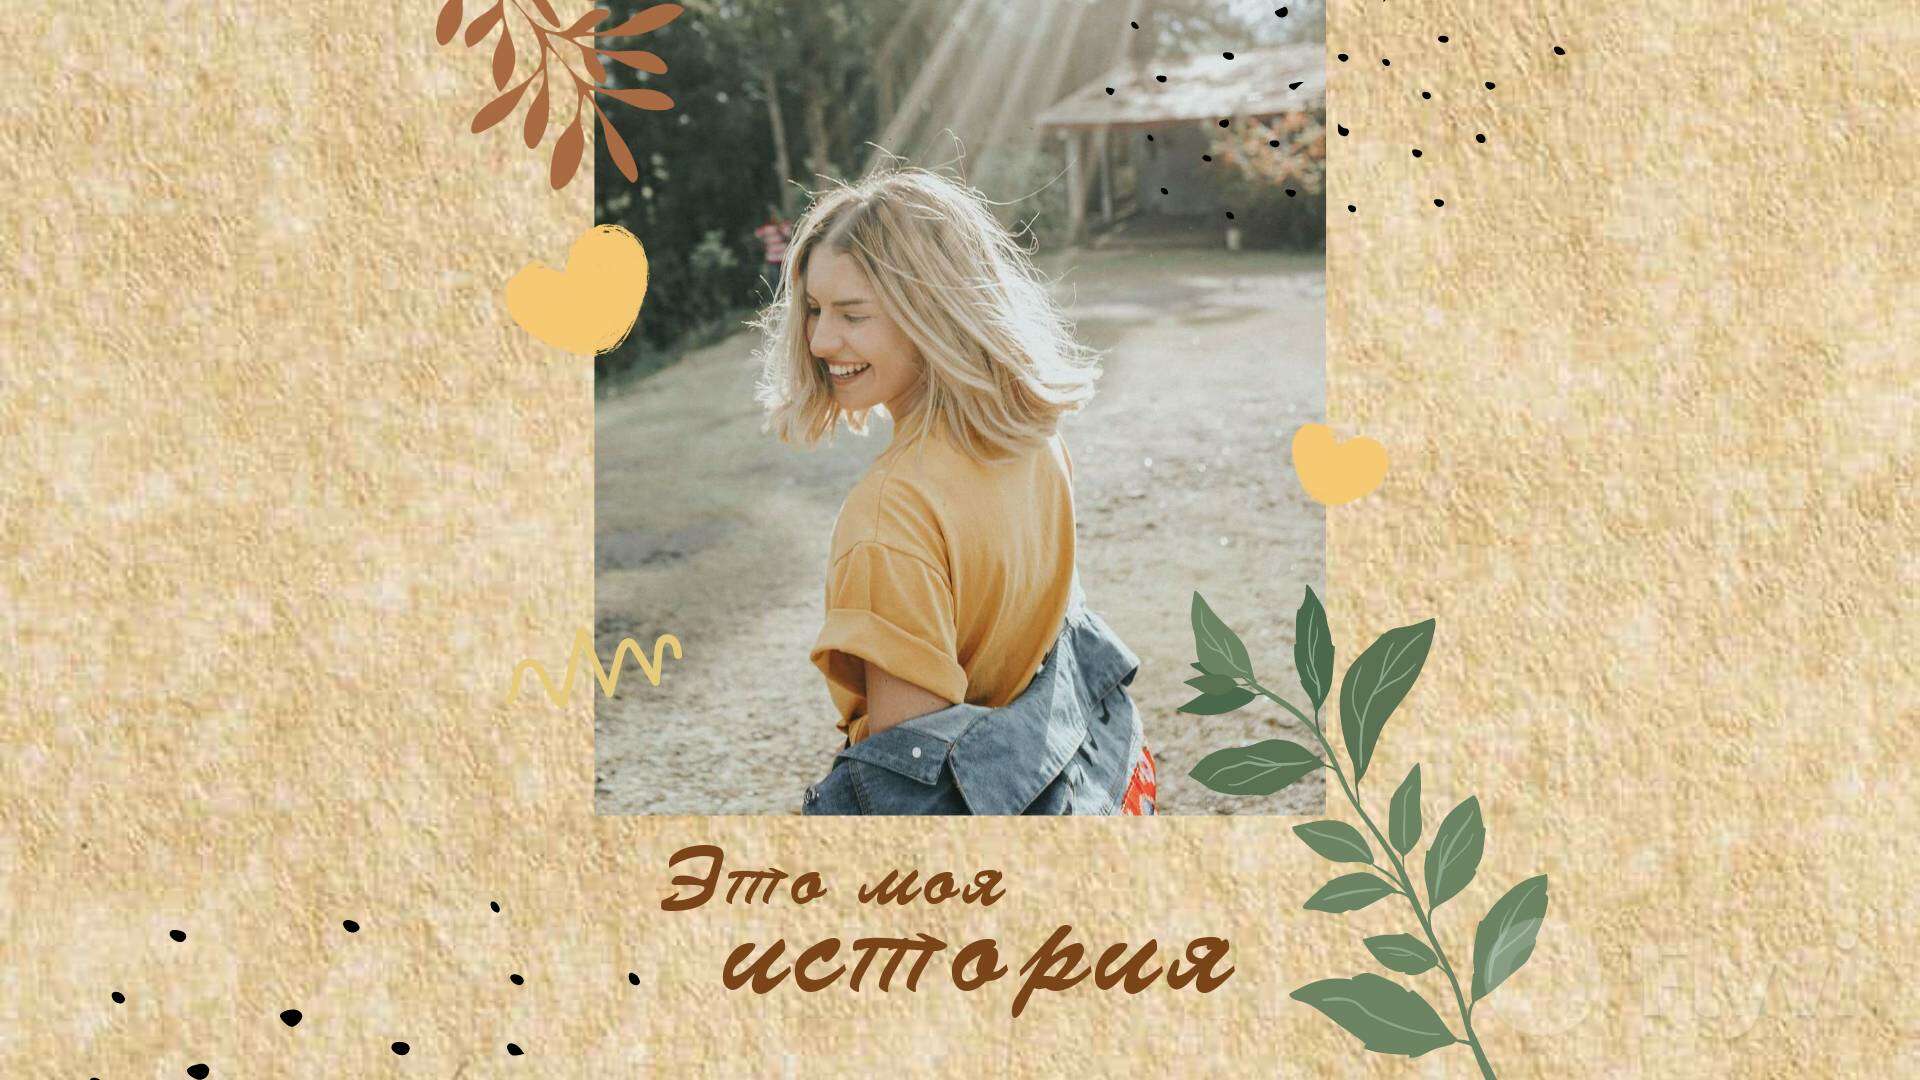 Фактурный пост с бежевой шероховатой штукатуркой и фото с летним сюжетом и девушкой блондинкой